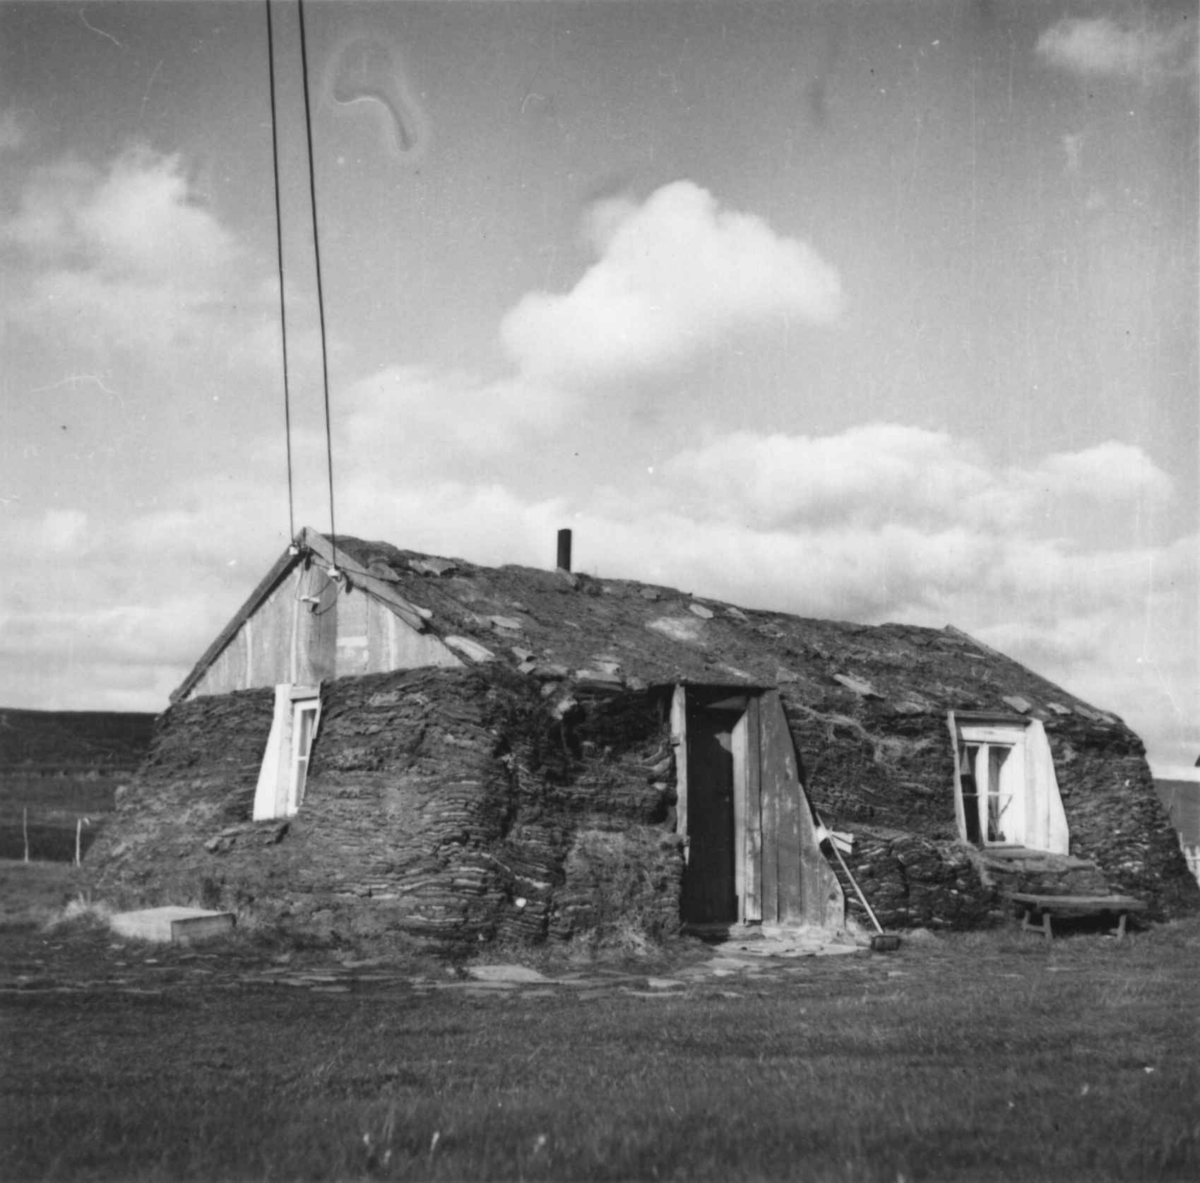 Magrestine Pedersens boliggamme med dør og vinduer, bygget i husfasong. Ánnejohka - Vestre Jakobselv, Finnmark 1951.